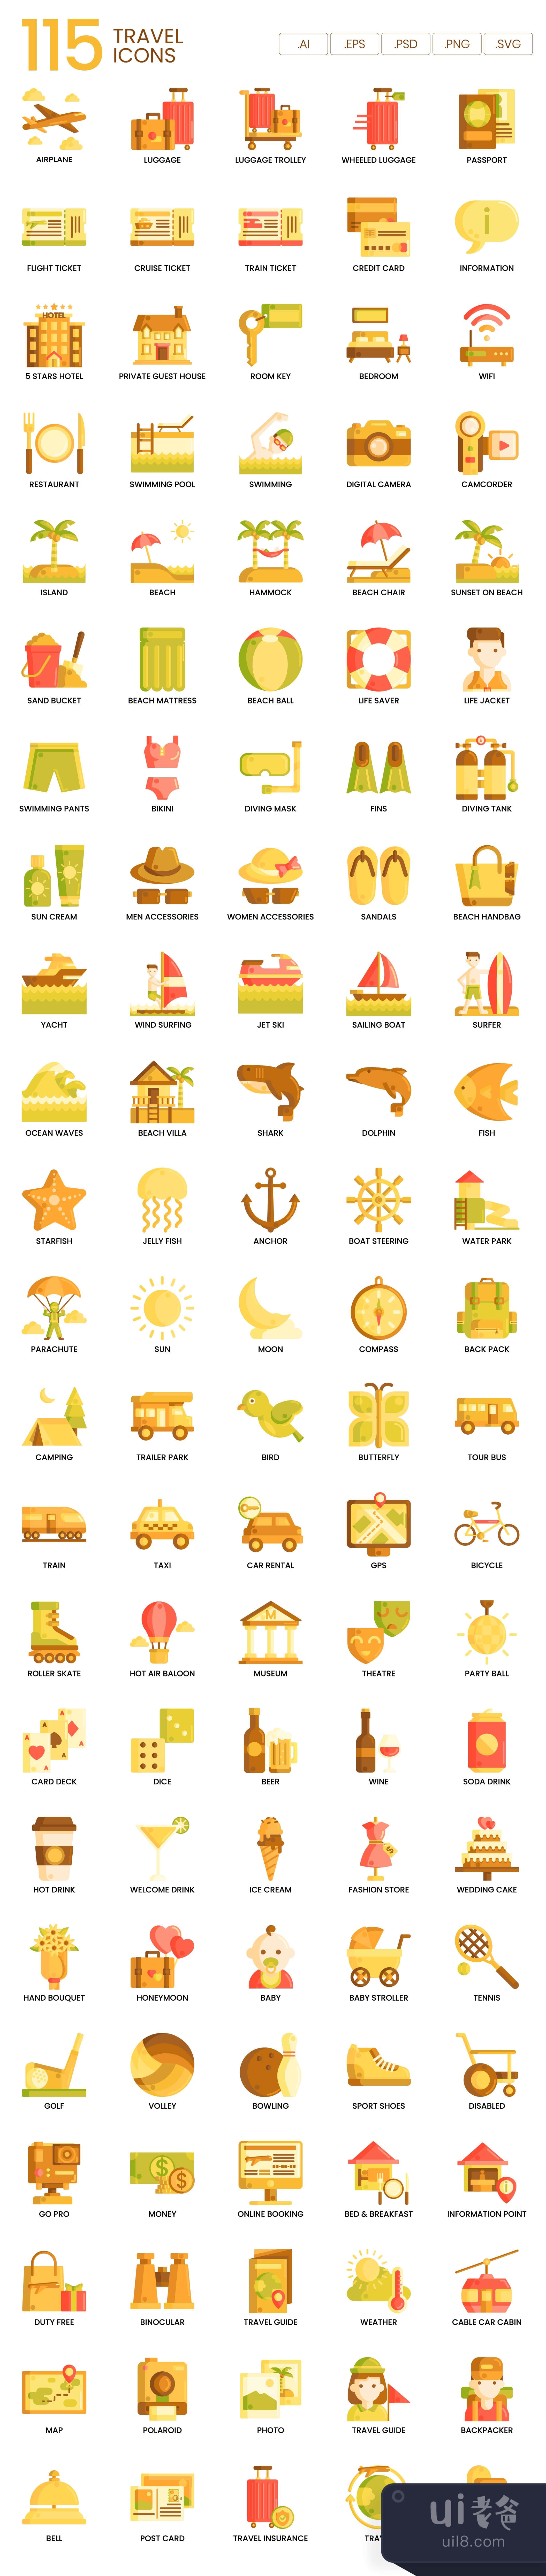 115个旅游图标焦糖系列 (115 Travel Icons  Caramel Series)插图